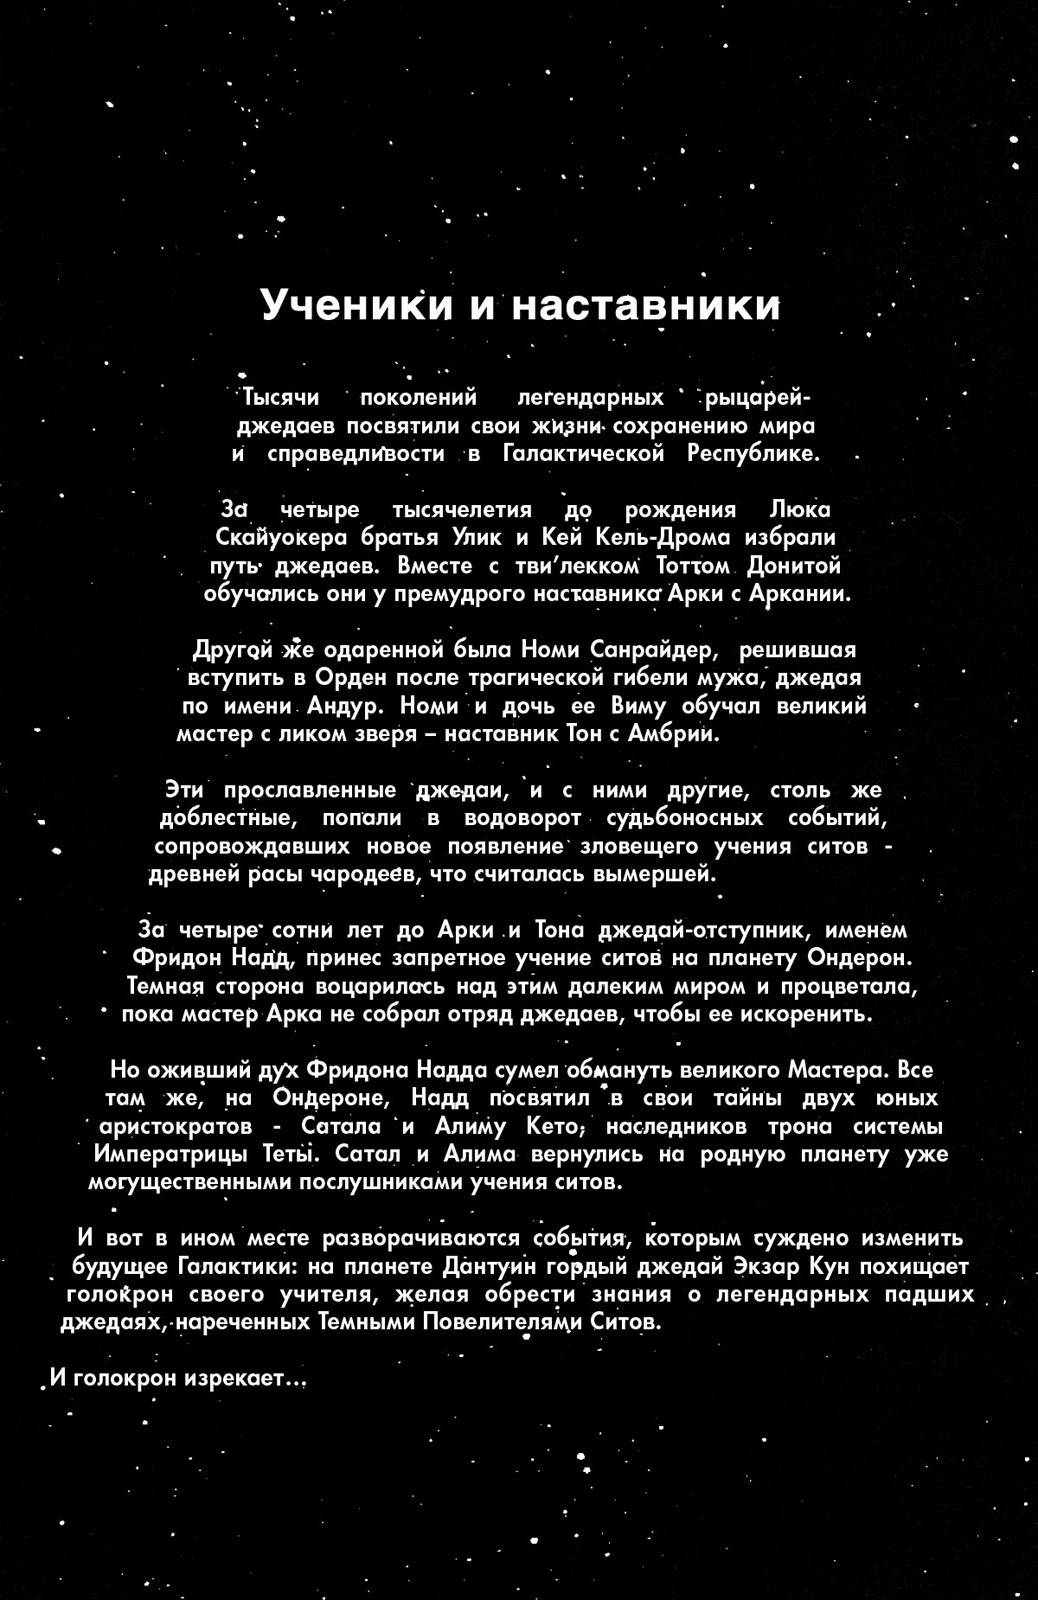 Звездные Войны: Сказания о Джедаях: Темные Повелители Ситов №1 онлайн